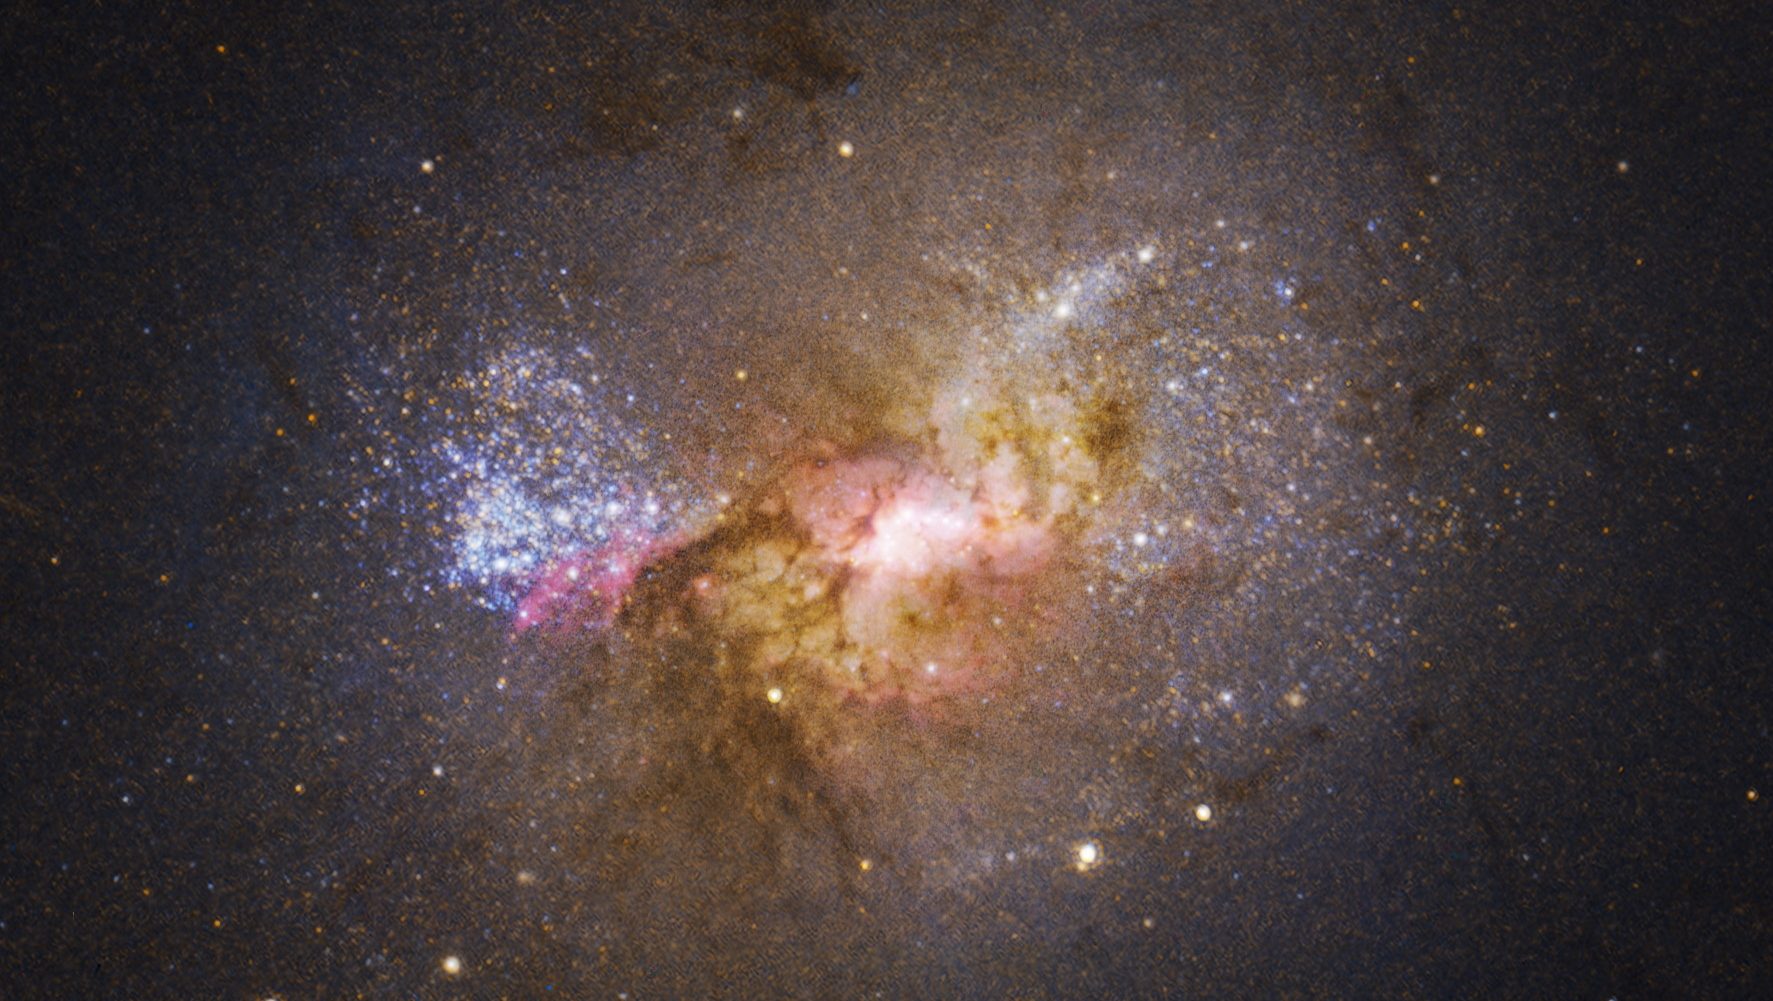 dwarf starburst galaxy henize 2-10